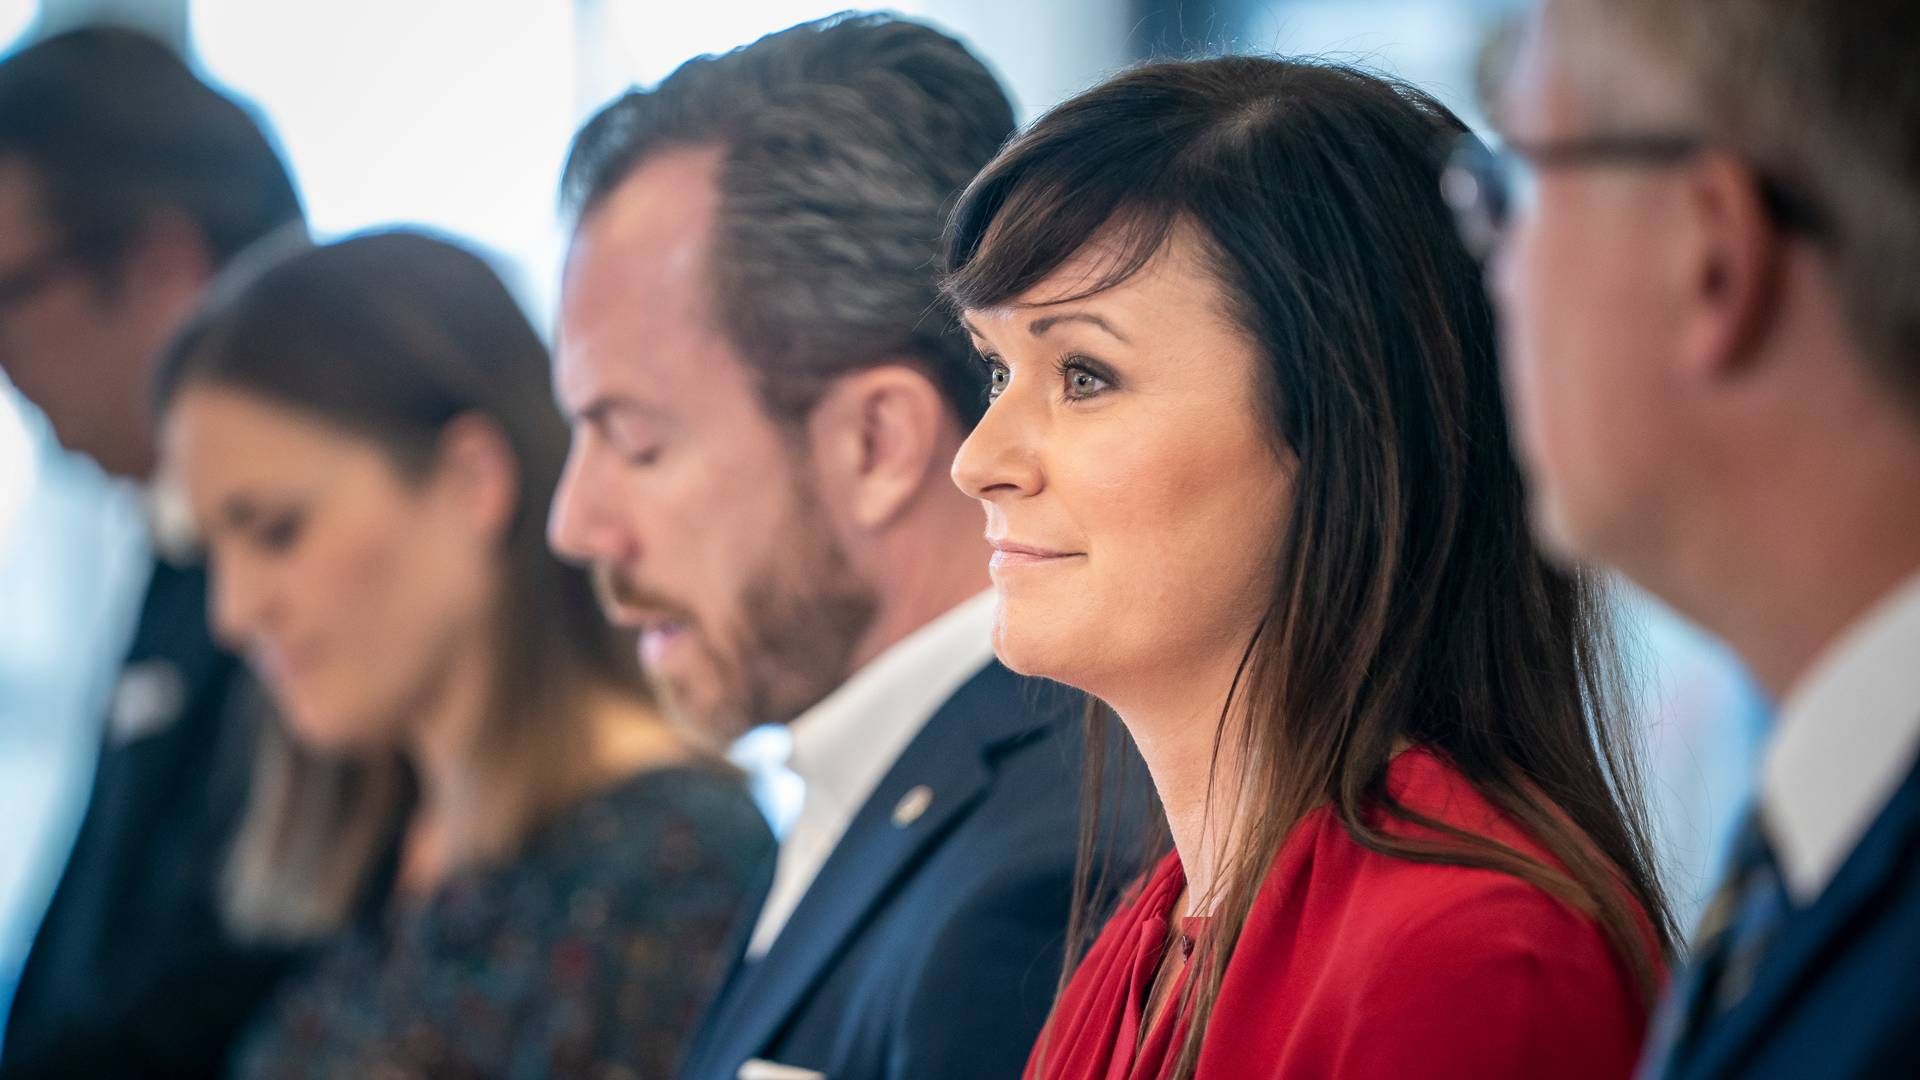 Venstres politiske ordfører, Sophie Løhde. | Foto: Mads Claus Rasmussen/Ritzau Scanpix